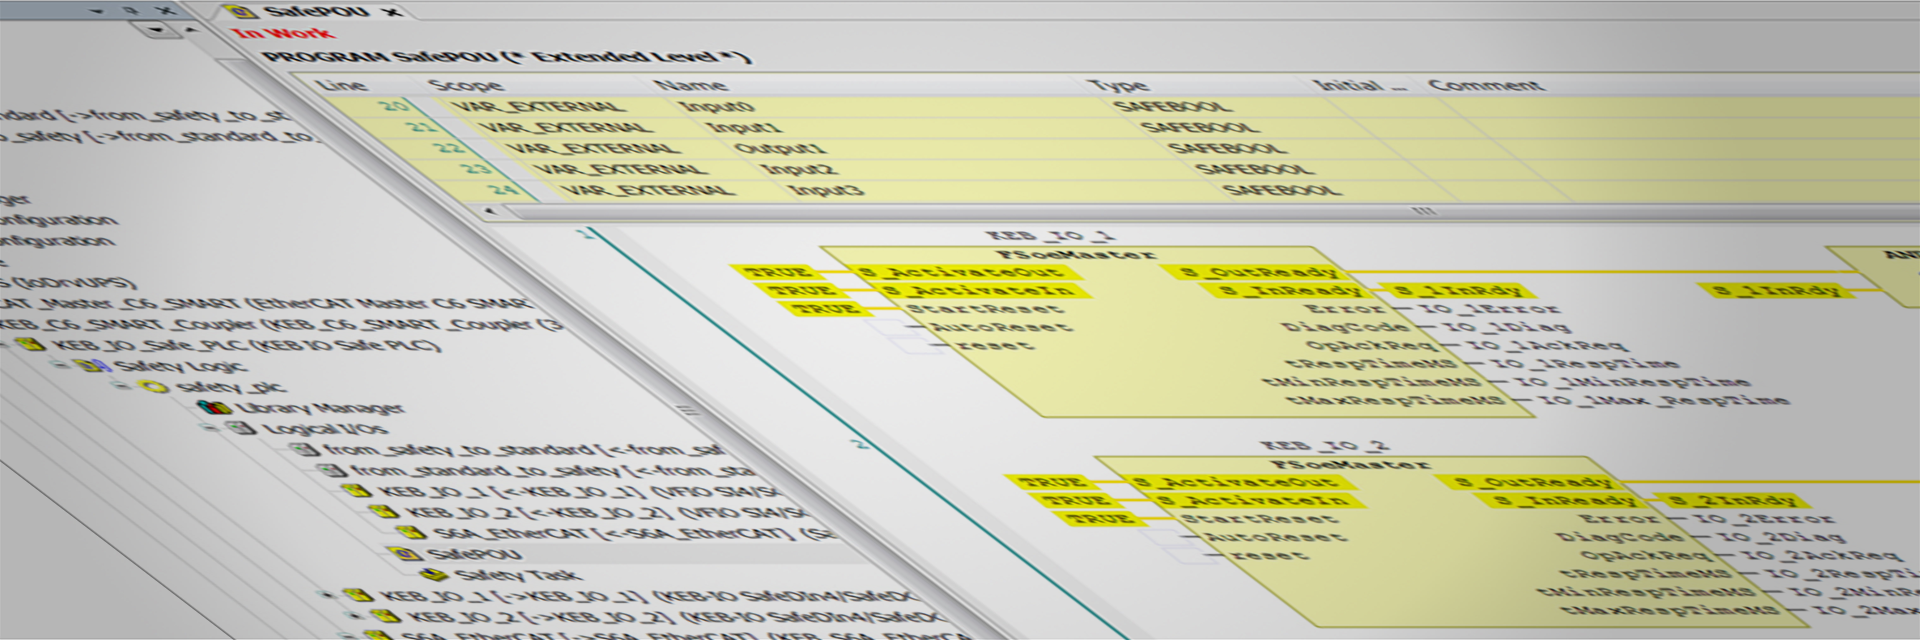 Screenshot des Software Tools COMBIVIS studio 6